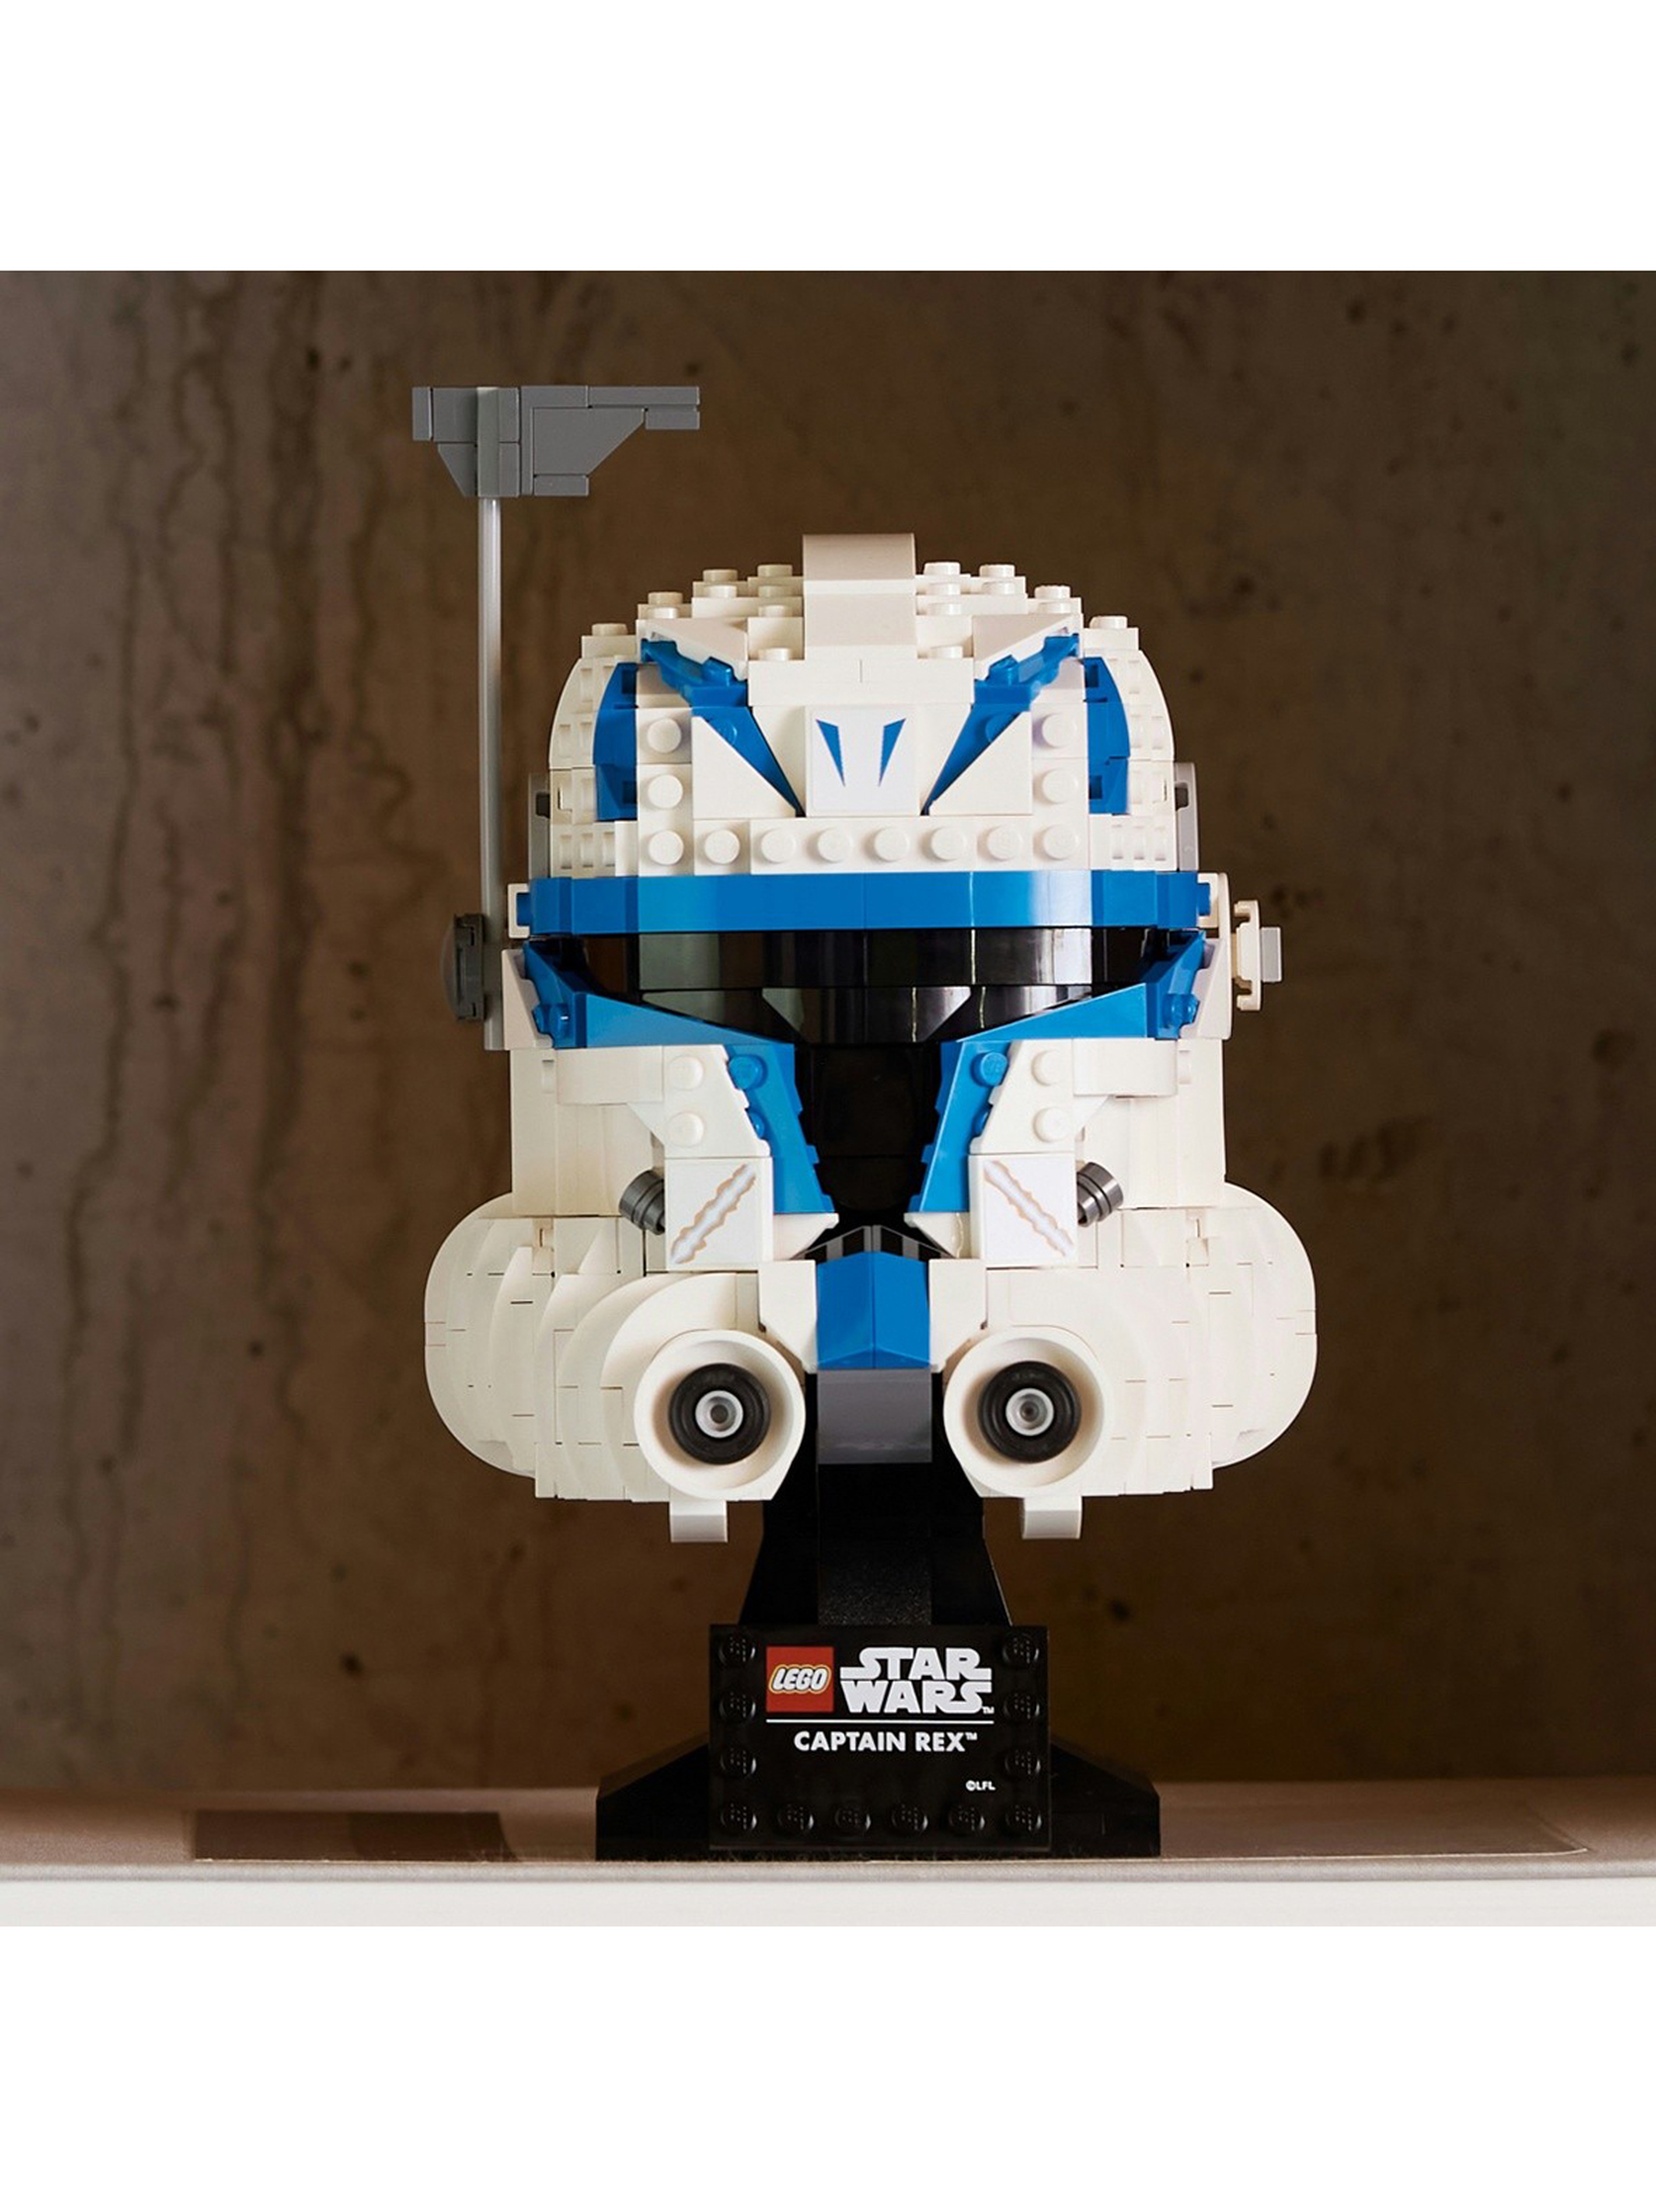 Klocki LEGO Star Wars 75349 Hełm kapitana Rexa - 854 elementy, wiek 18 +